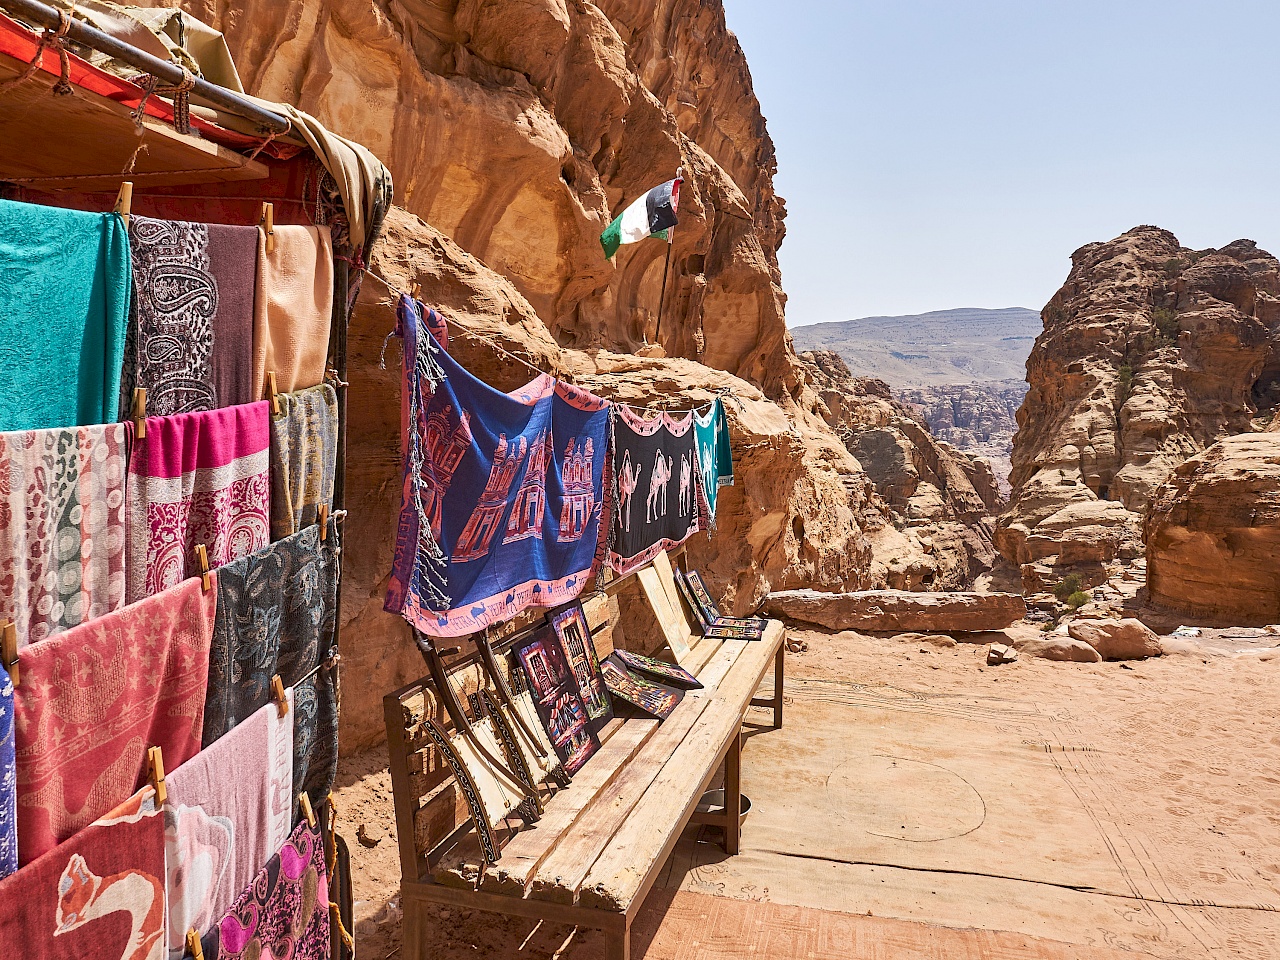 Souvenirstände auf dem Weg zum Kloster in Petra (Jordanien)